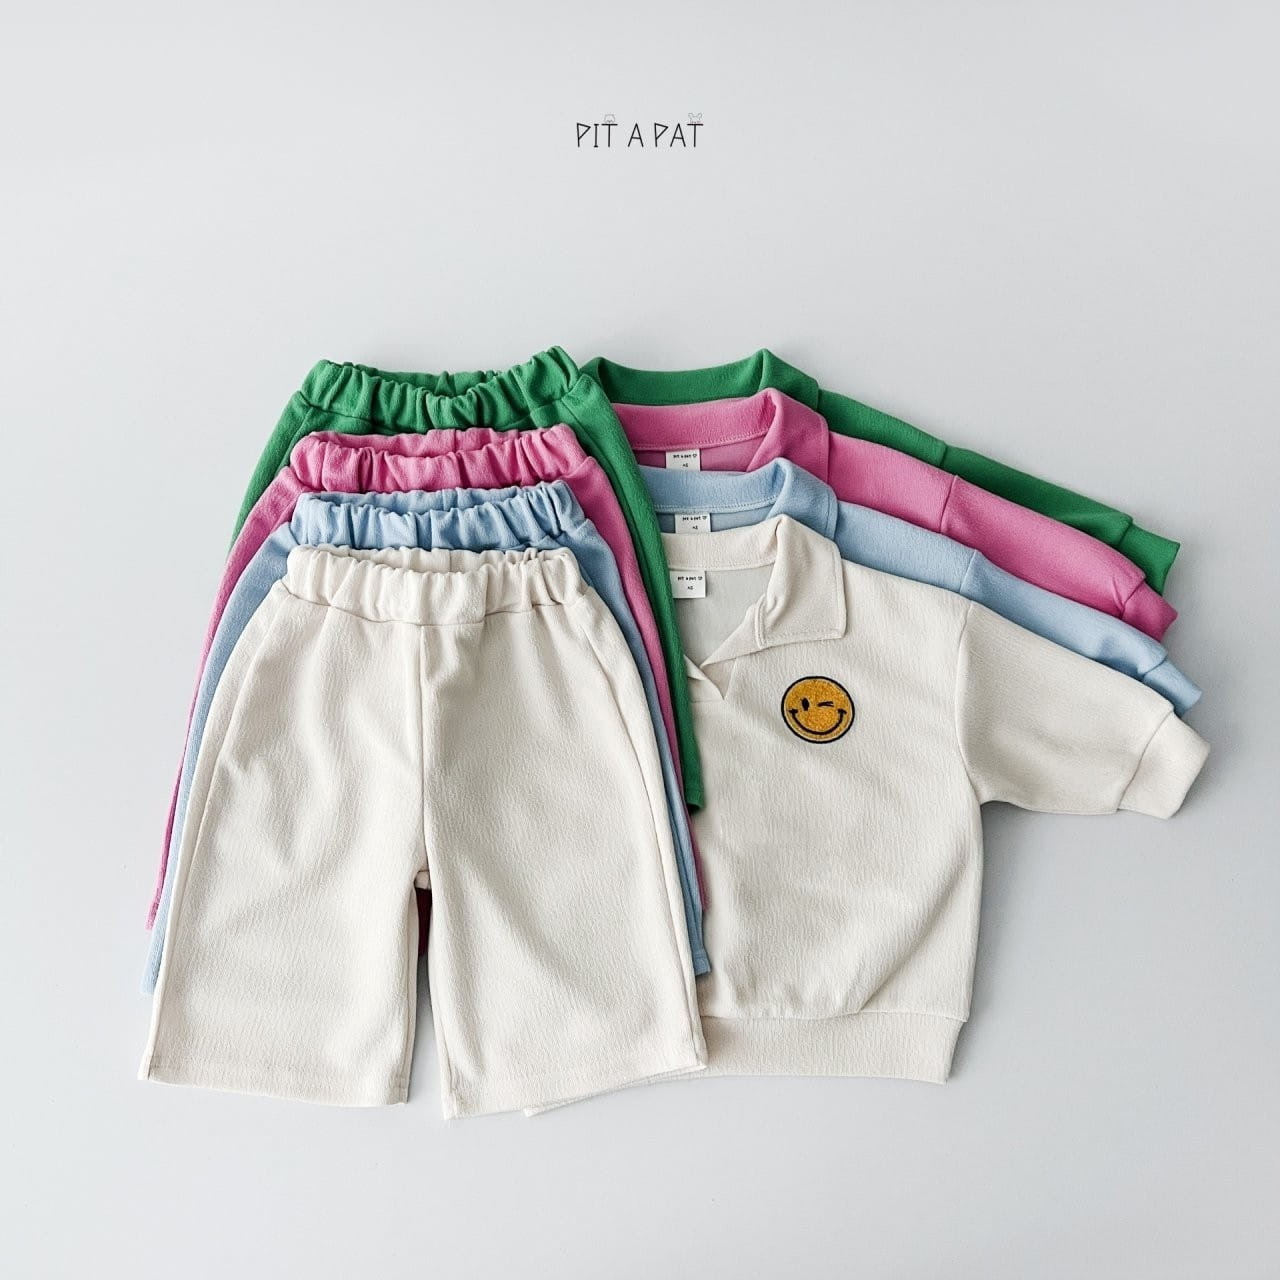 Pitapat - Korean Children Fashion - #kidzfashiontrend - Smiley Terry Top Bottom Set - 3